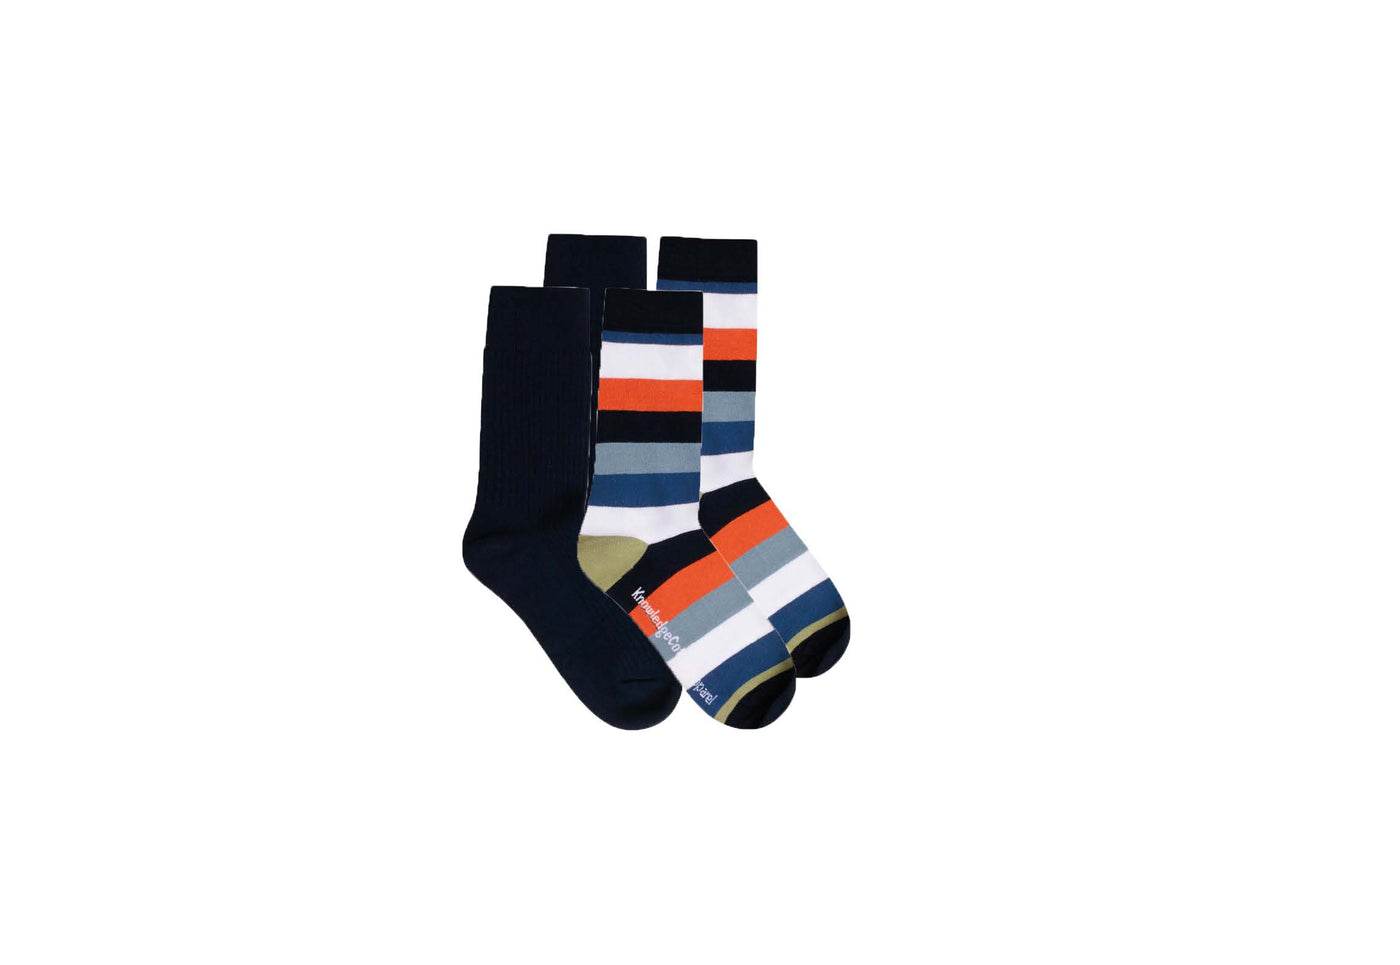 Knowledge Cotton Apparel - Timber 4-pack Socks Block Striped/Solid Socks. Nachhaltige Bekleidung für Männer. Bio, fair & vegan. green.in.pieces